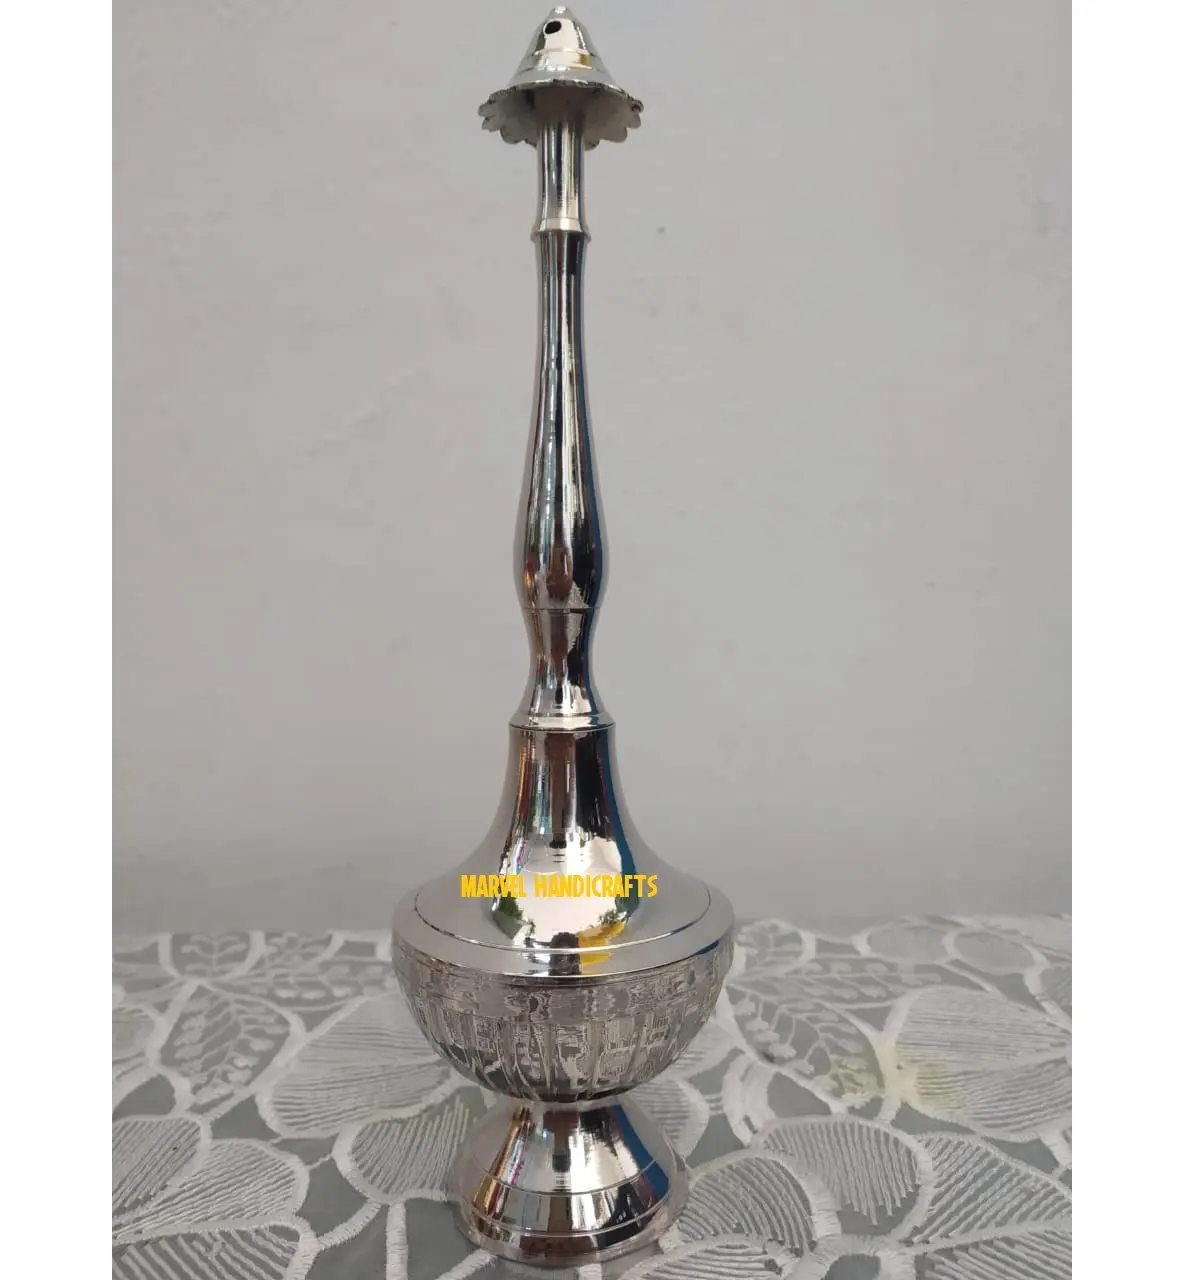 Metall handwerk Wassersp ender Indische handgemachte Rosenwasser Parfüm Sprinkler flasche für Golf Dubai Katar Kuwait Oman Saudi-Arabien